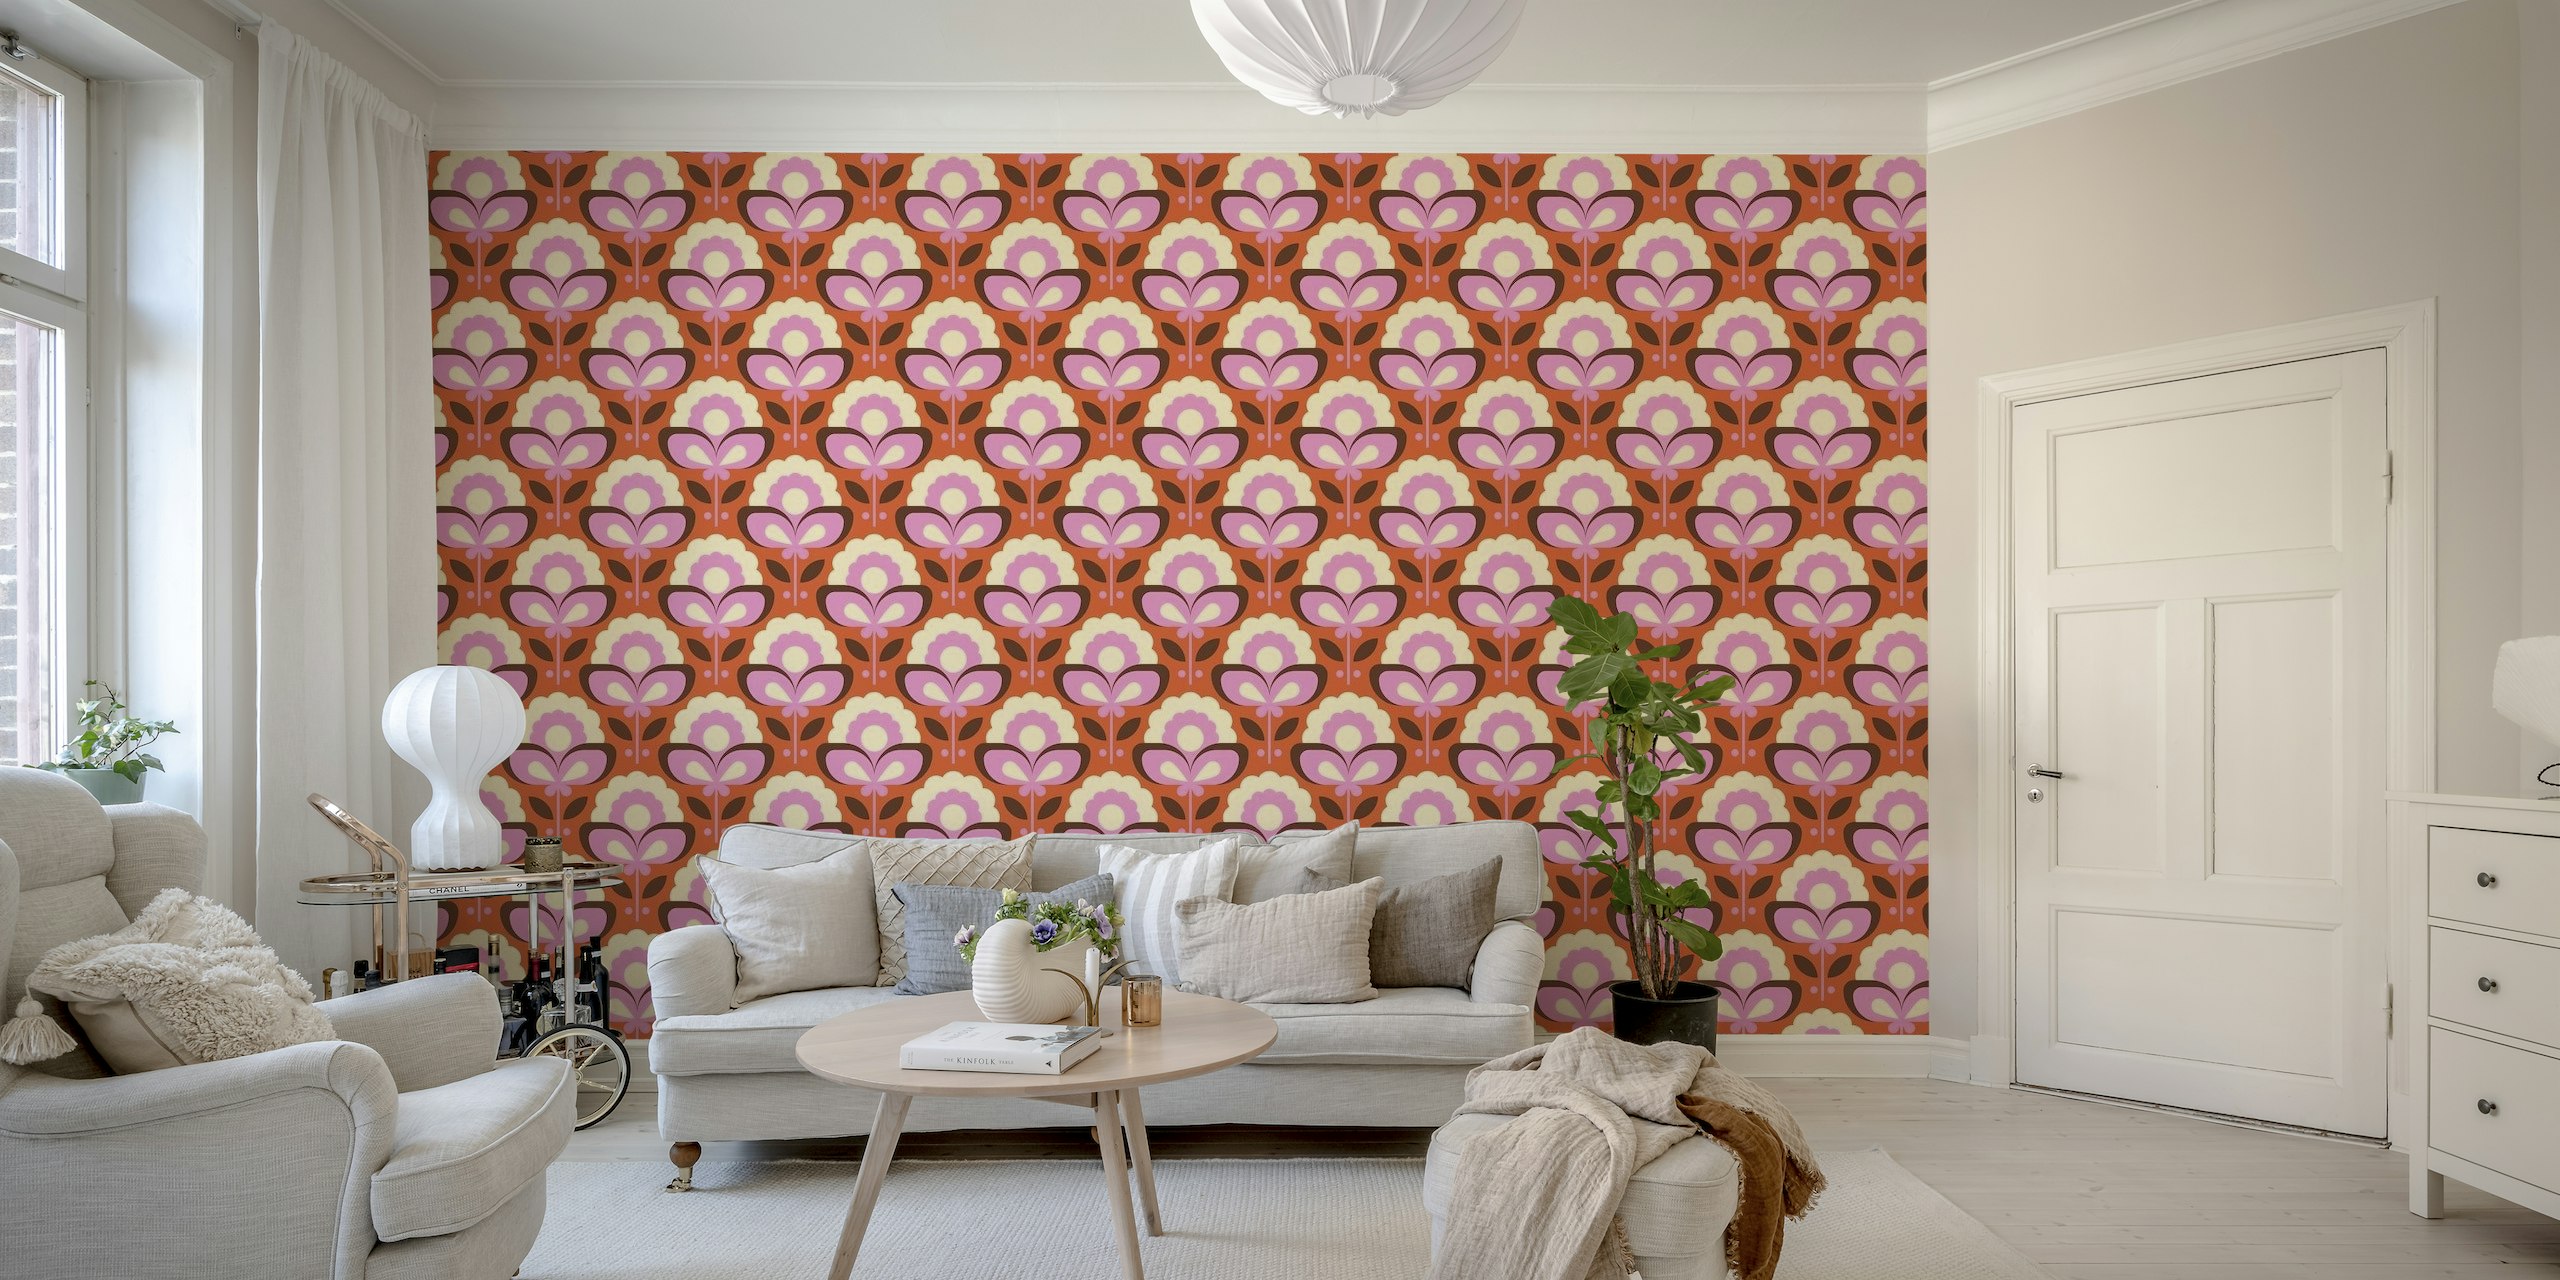 Zidna slika u retro stilu s ružičastim i narančastim cvjetovima i uzorcima